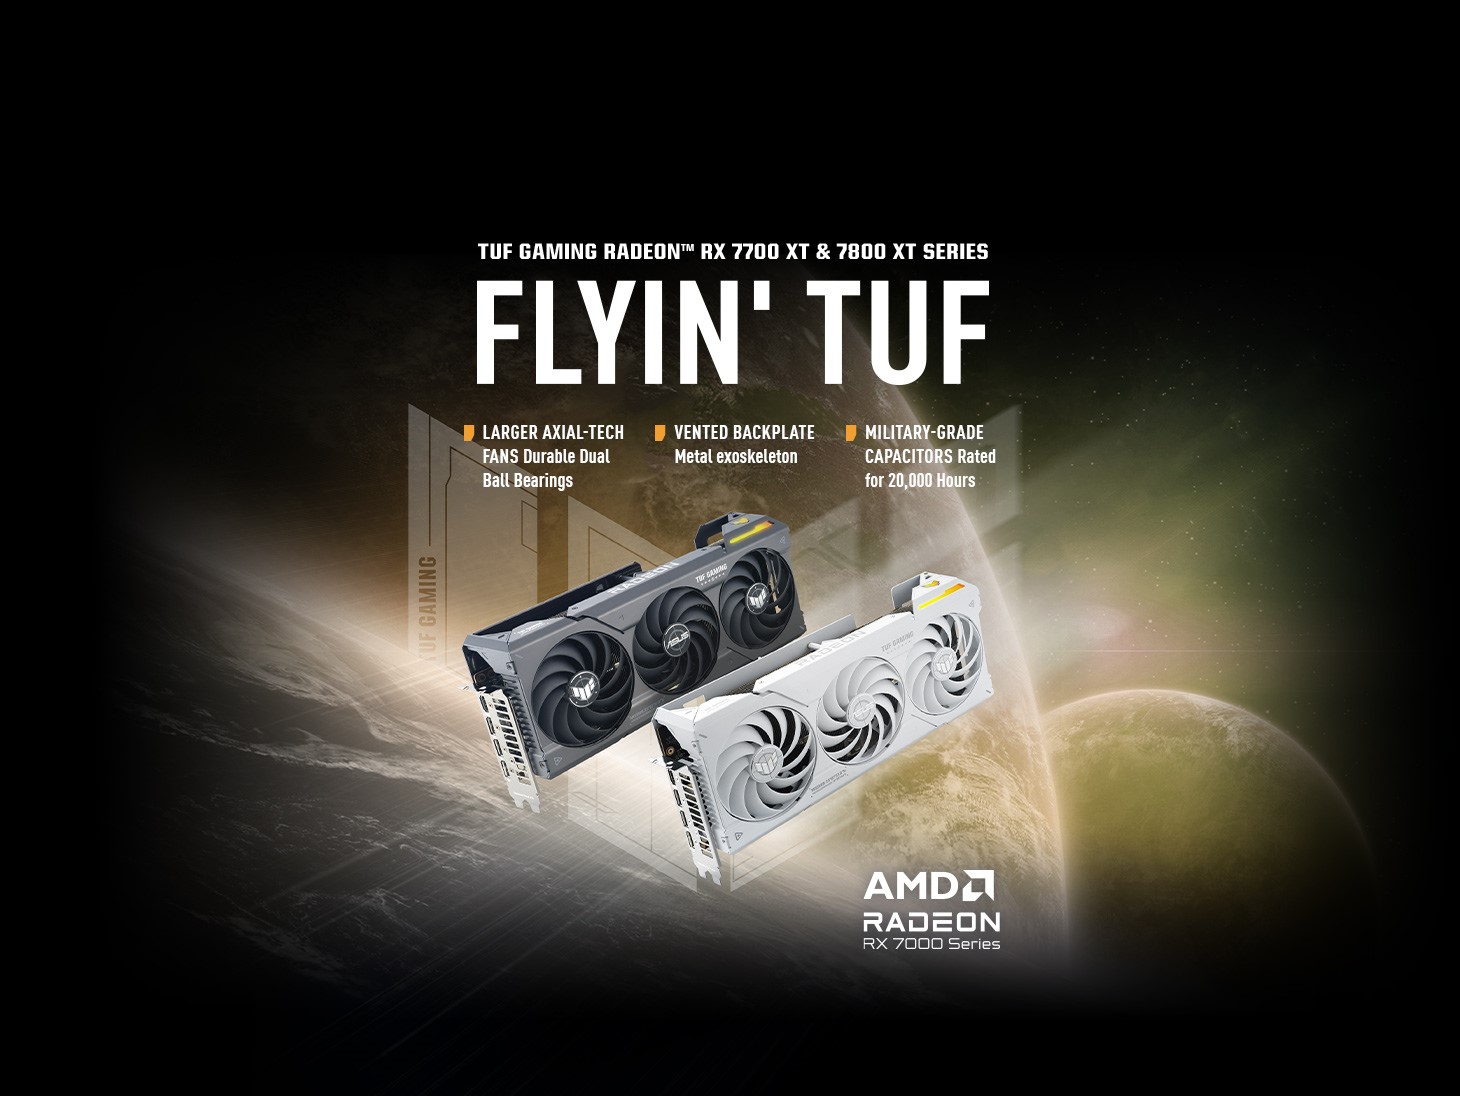 ASUS anuncia las tarjetas gráficas TUF Gaming AMD Radeon RX 7800 XT y Radeon RX 7700 XT